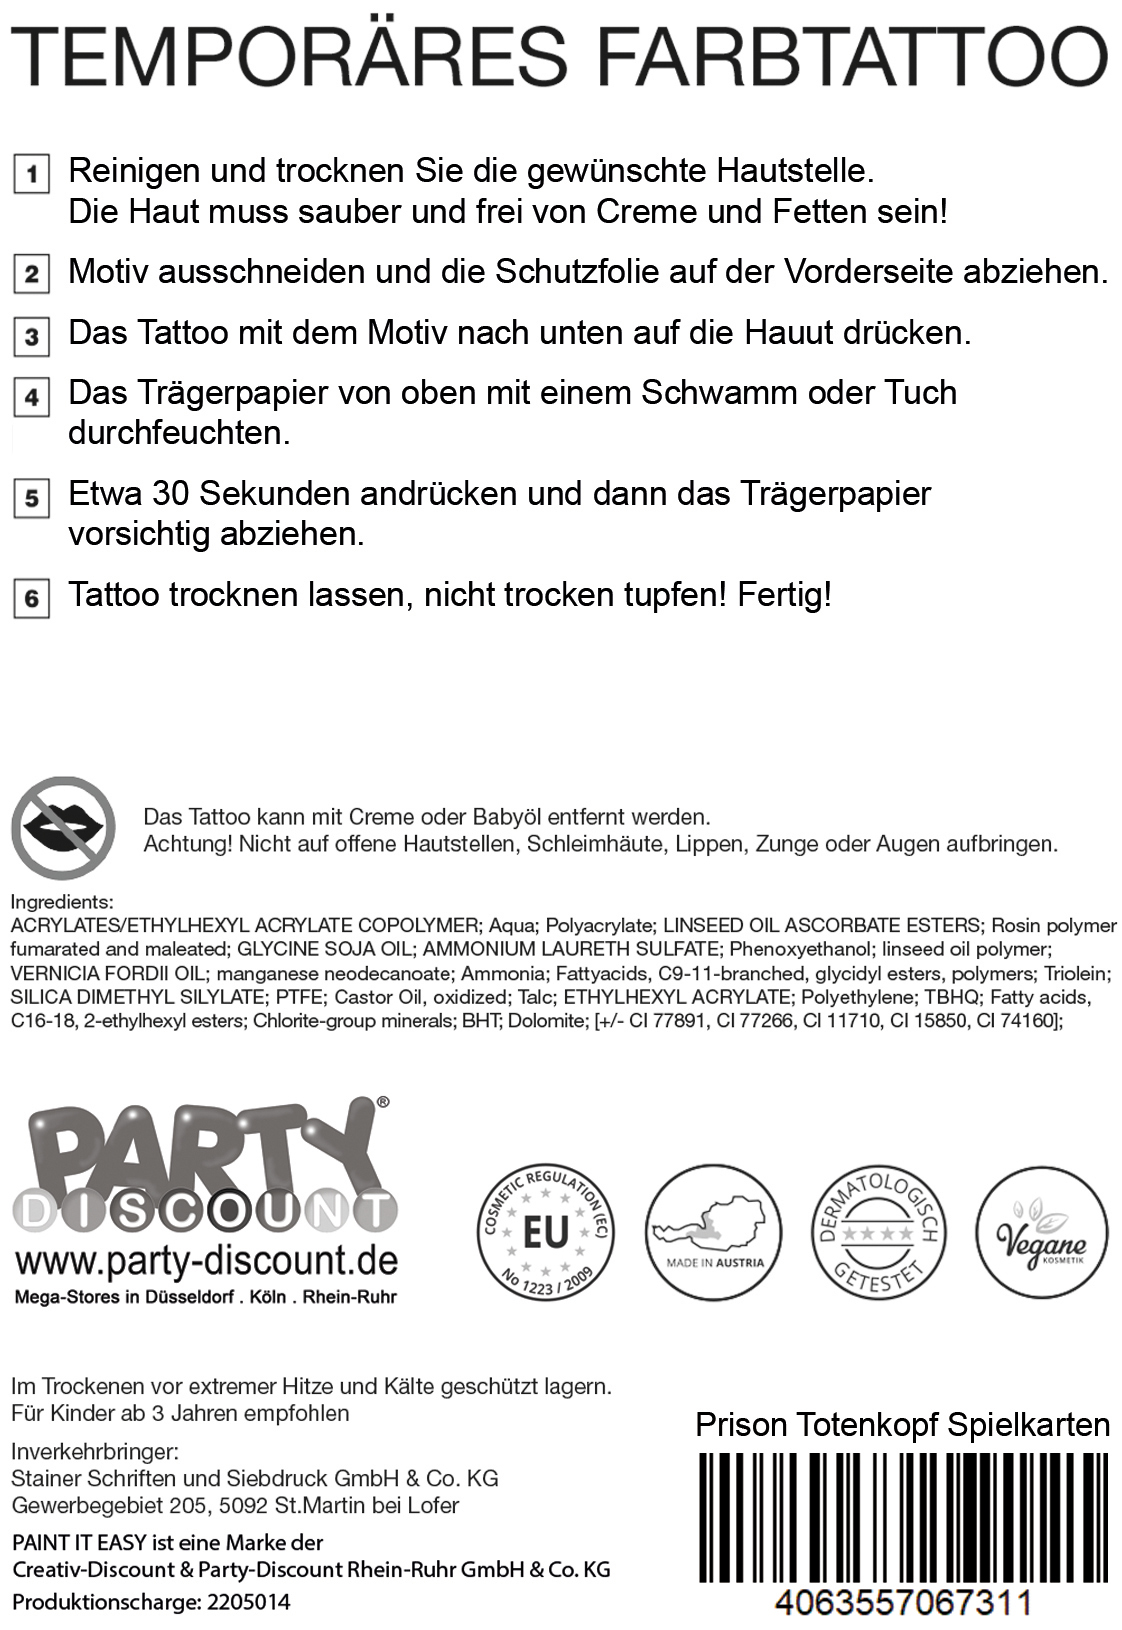 NEU Temporäres Tattoo-Motiv Reality, 10,5 x 14,8cm, Prison Totenkopf mit Spielkarten Bild 3